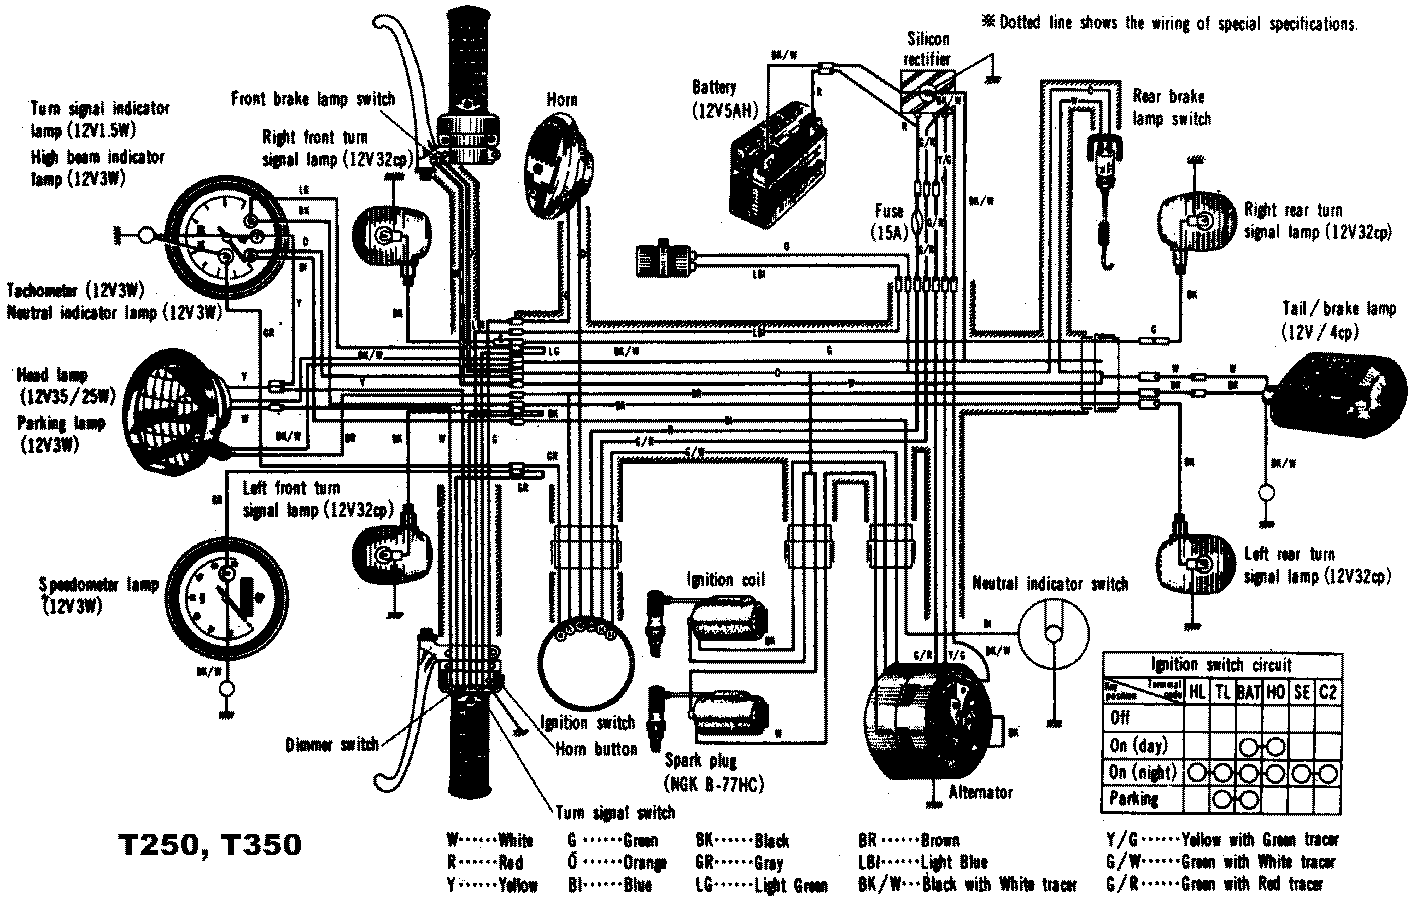 Démarrage avec ou sans batterie T250 - Forum Suzuki GT ... 1987 suzuki intruder wiring diagram 